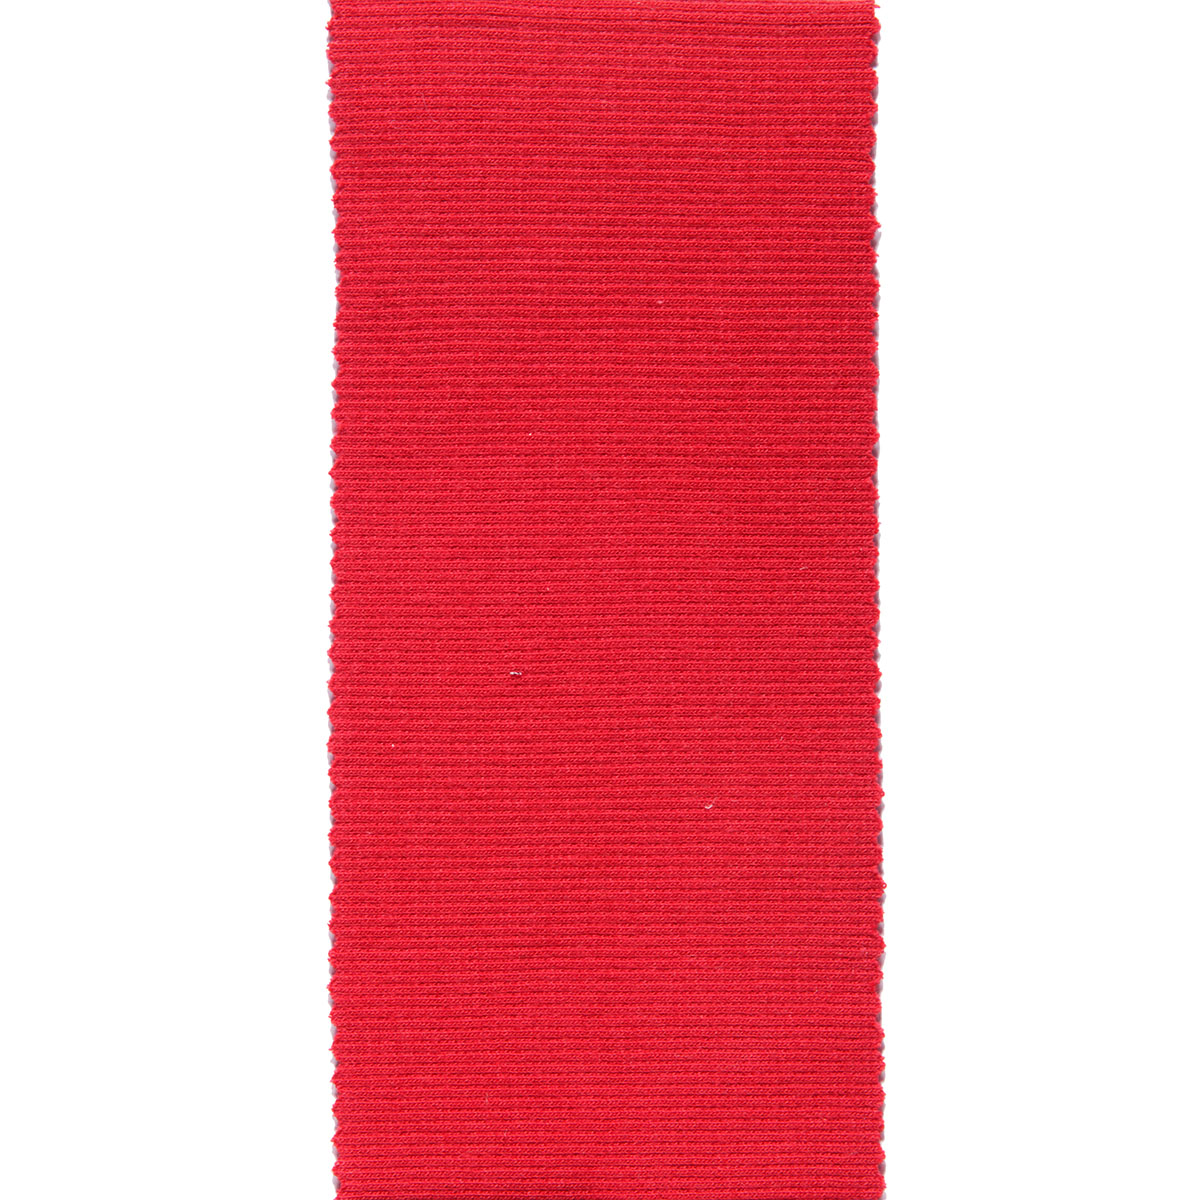 Dekostoff Gisele rot in 40cm Breite (METERWARE) Baumwollstoff Stoff aus 97% Baumwolle